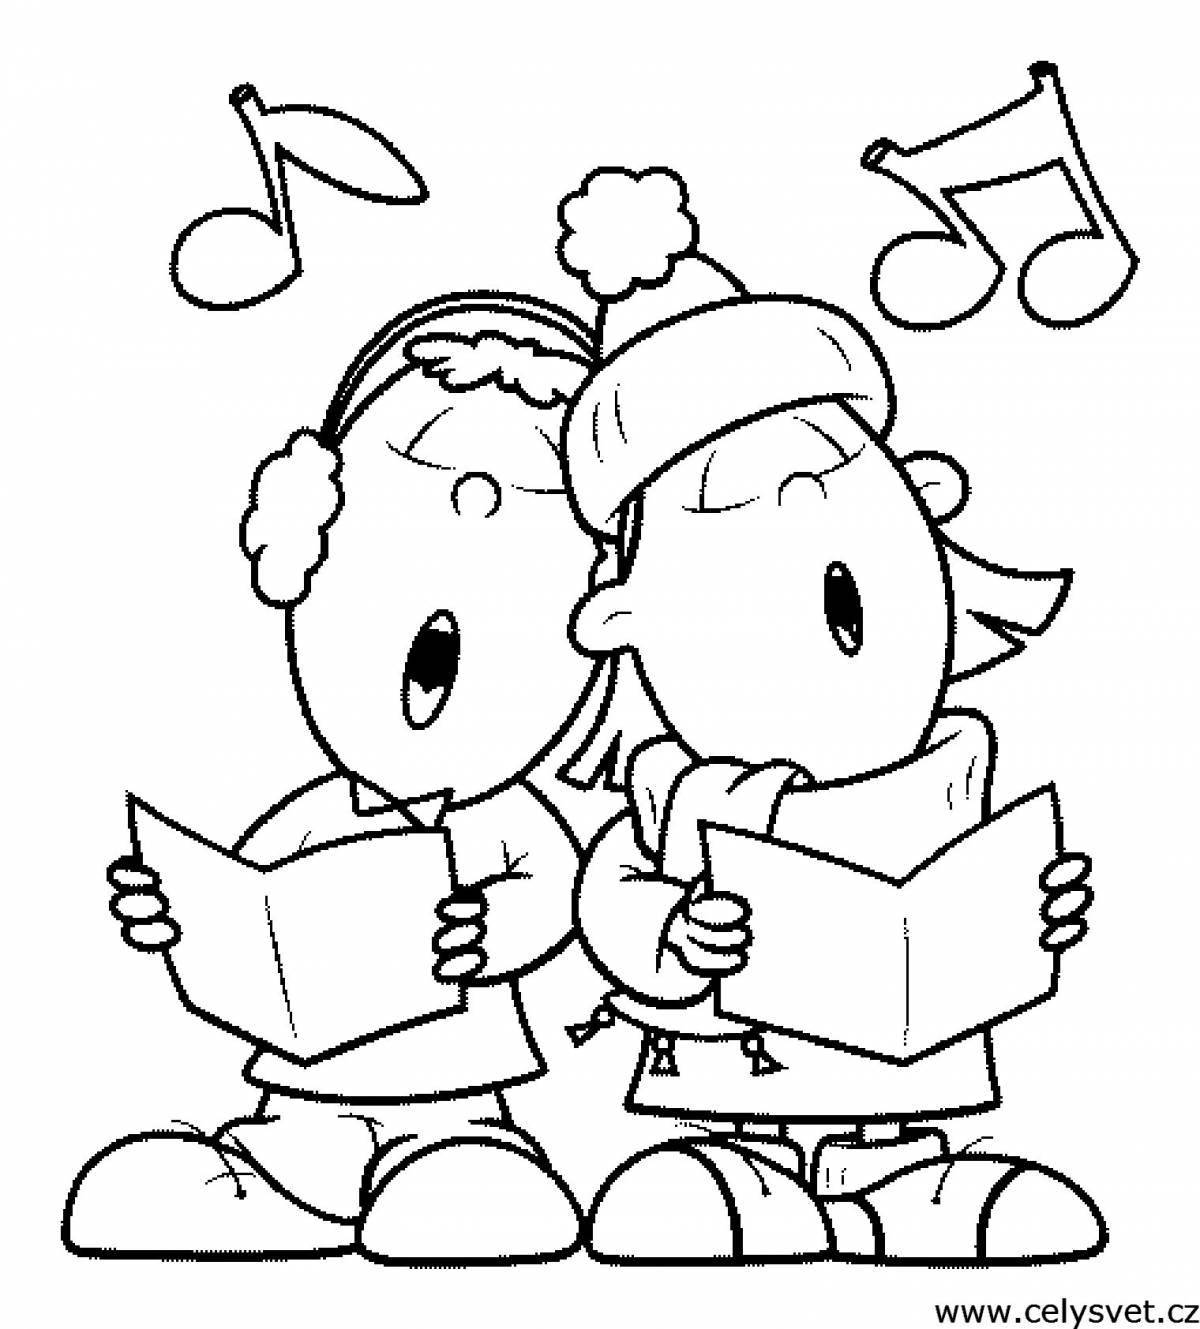 Cheerful children sing